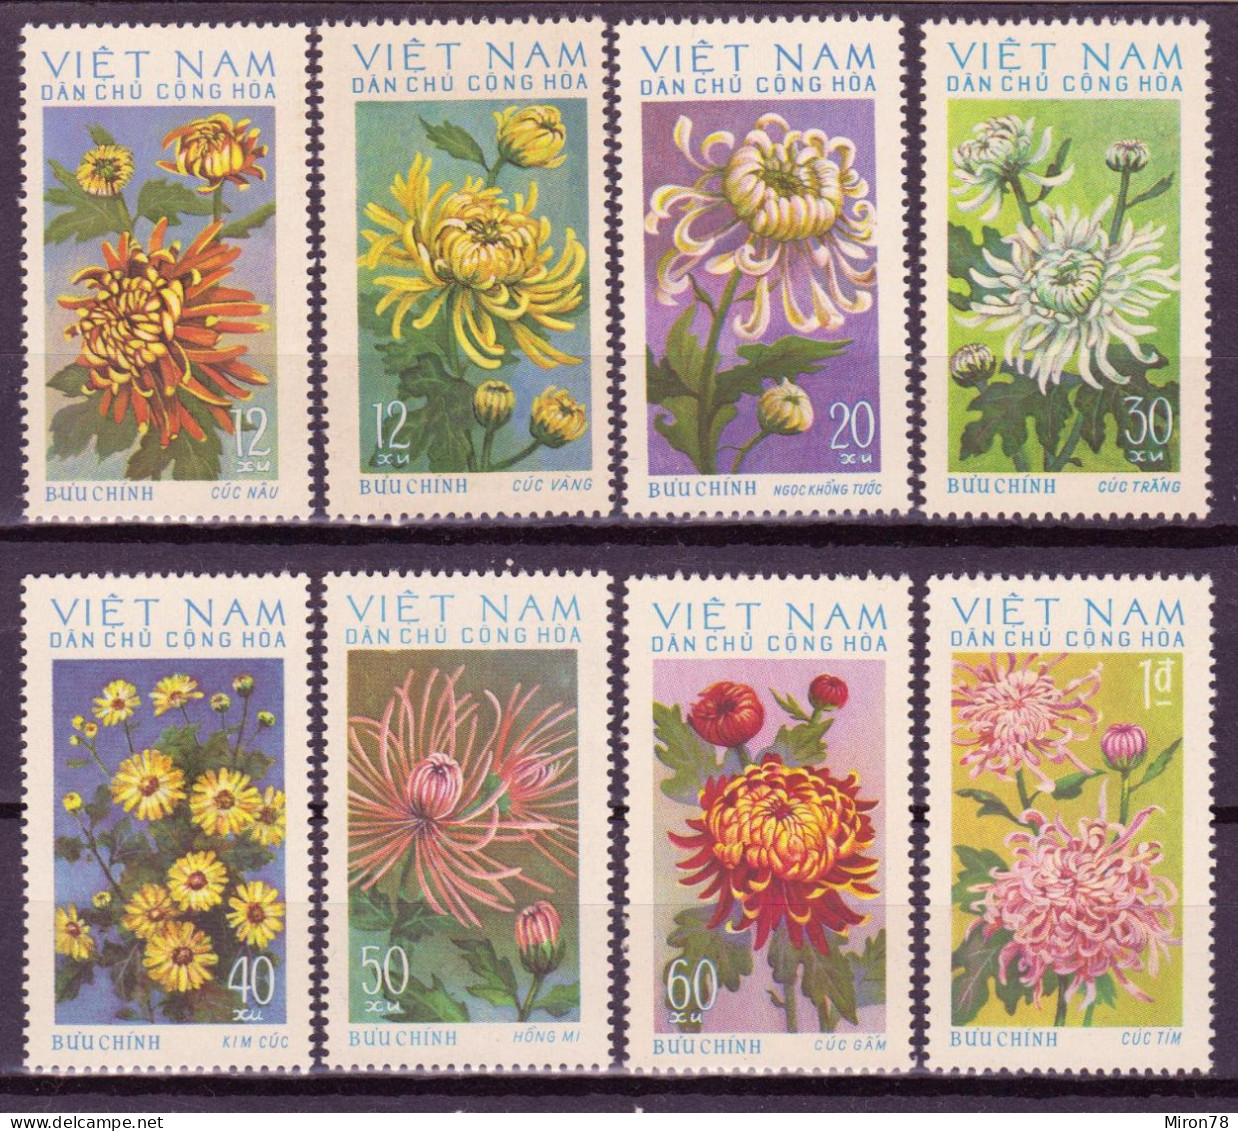 North Vietnam 1974 Vintage Stamp Set Chrysanthemum  MNH Lot23 - Vietnam